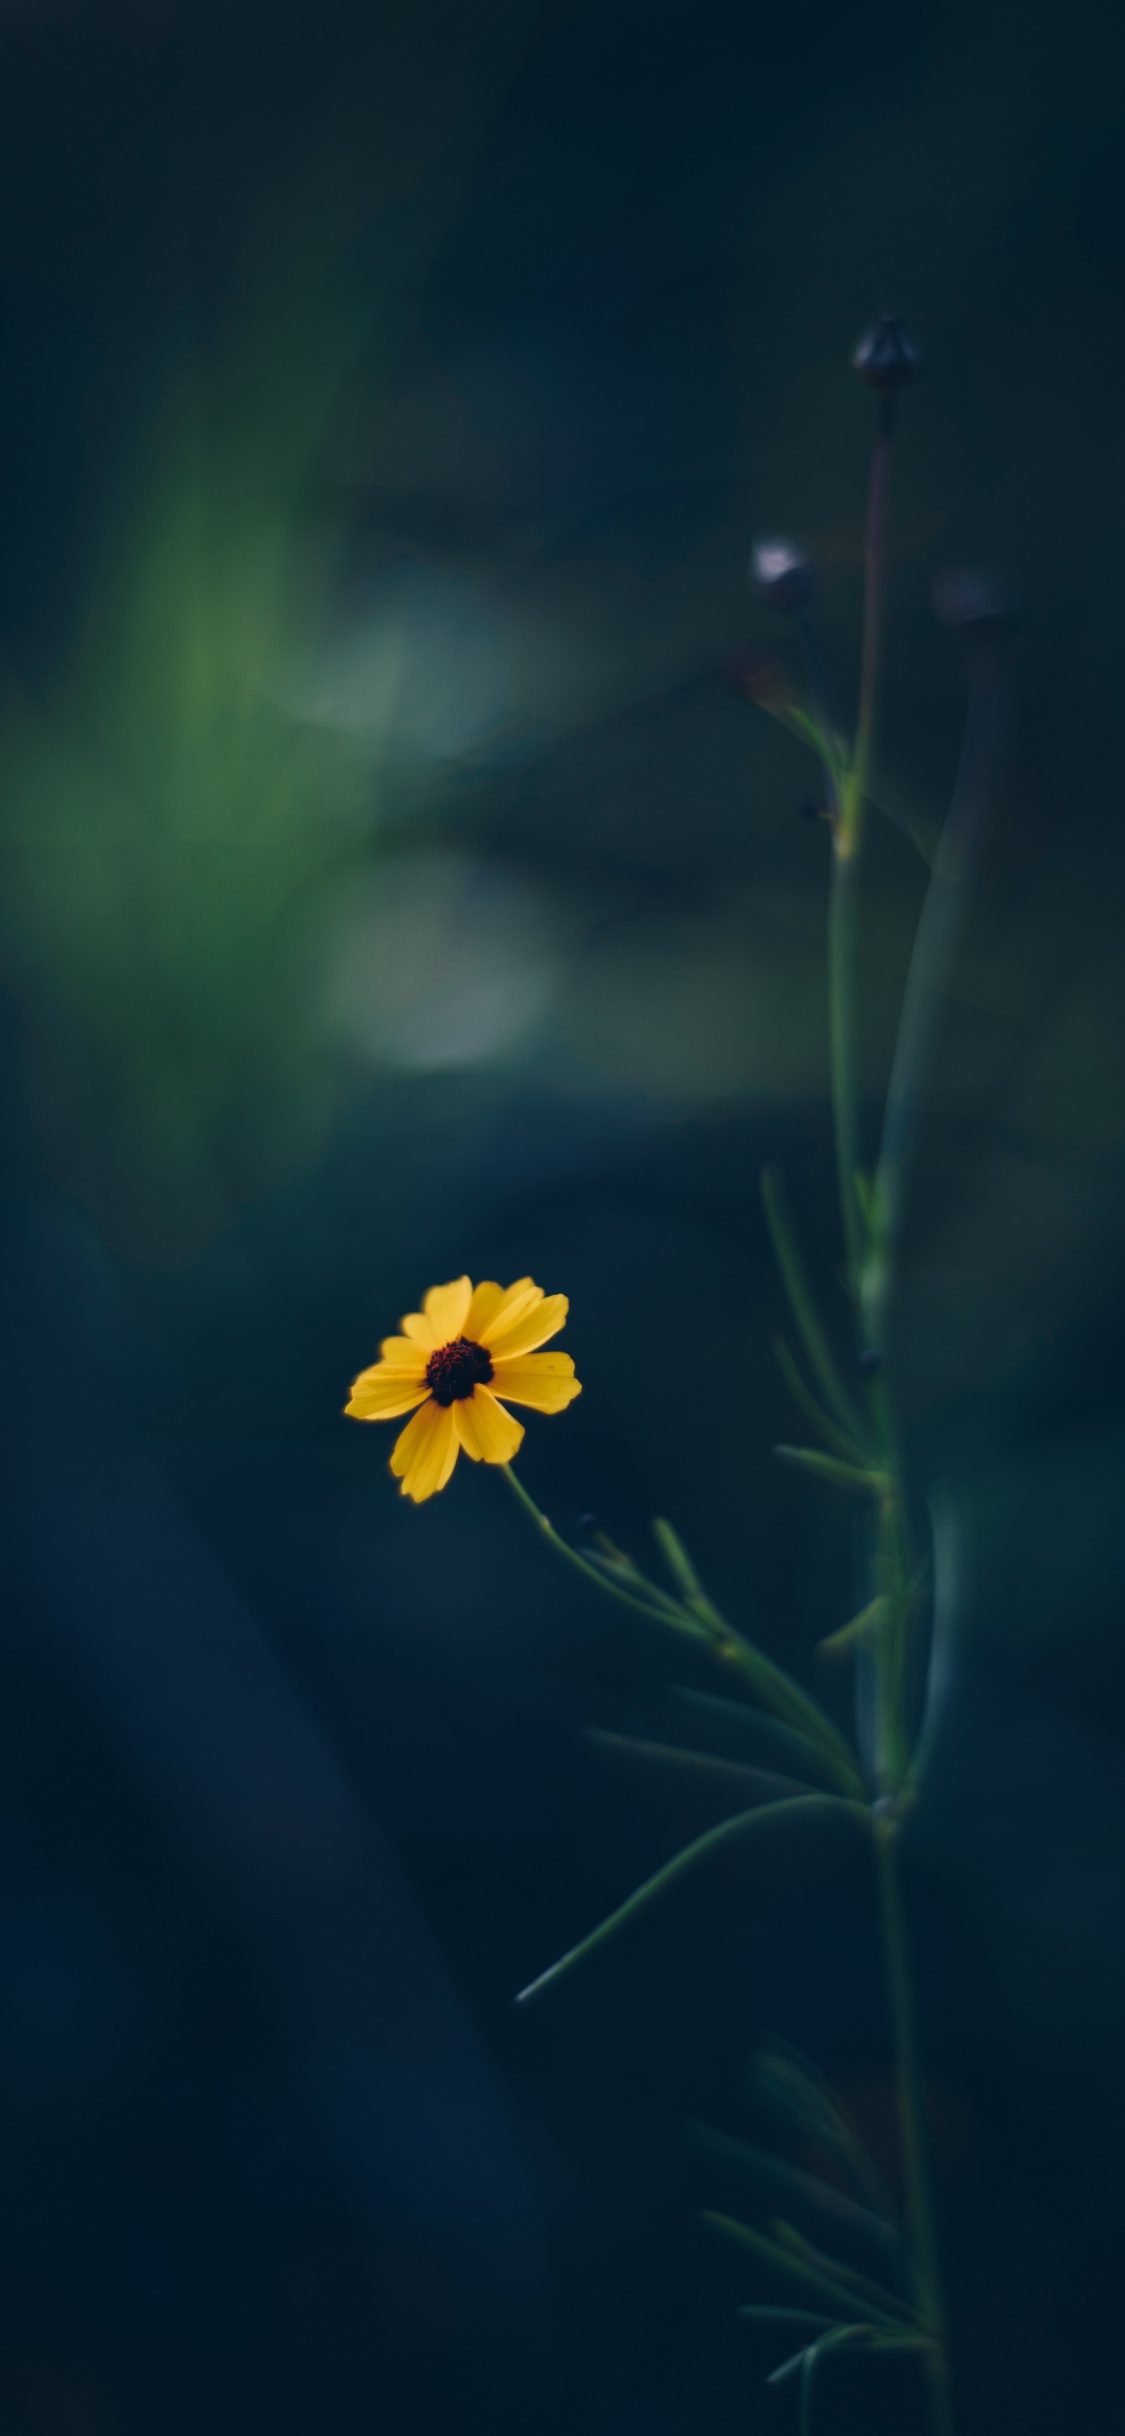 Yellow Flower in Tilt Shift Lens. Wallpaper in 1125x2436 Resolution